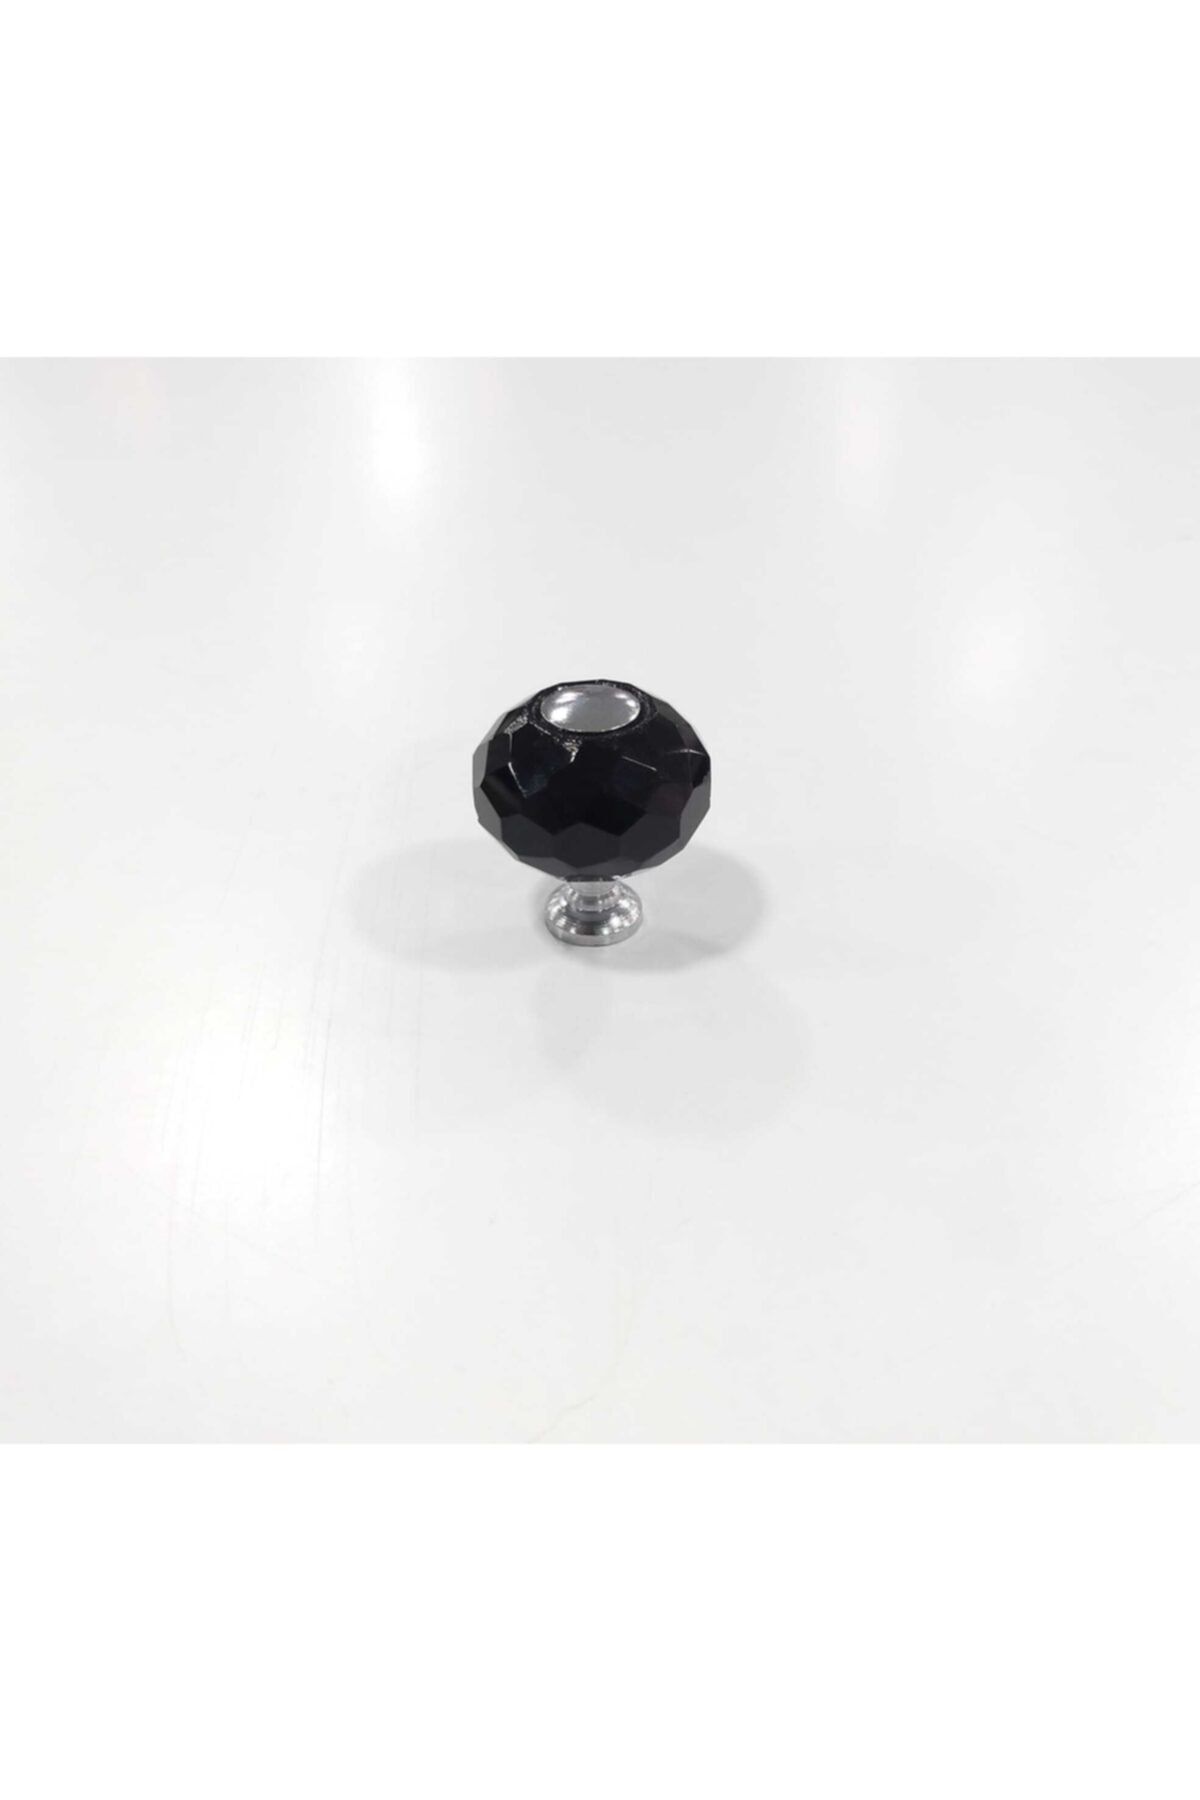 ARON (10 ADET) 30mm Oscar Düğme Kulp Küre Siyah-krom Kristal Komidin Kolson Şifonyer